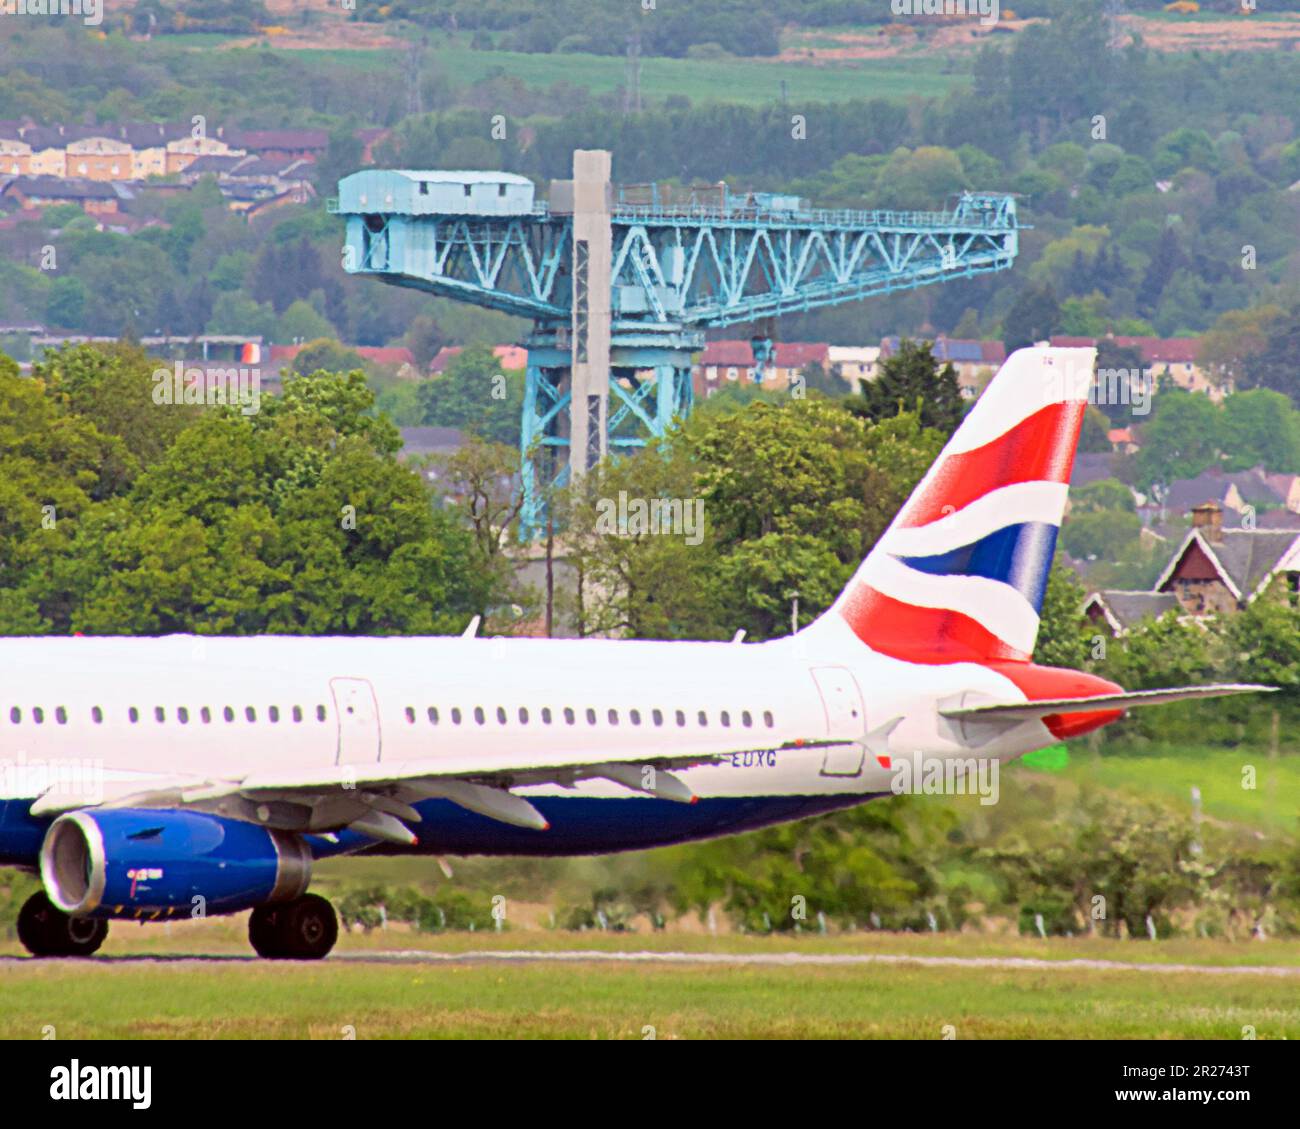 glasgow airport  british airways plane with clydebank shipbuilding crane Stock Photo